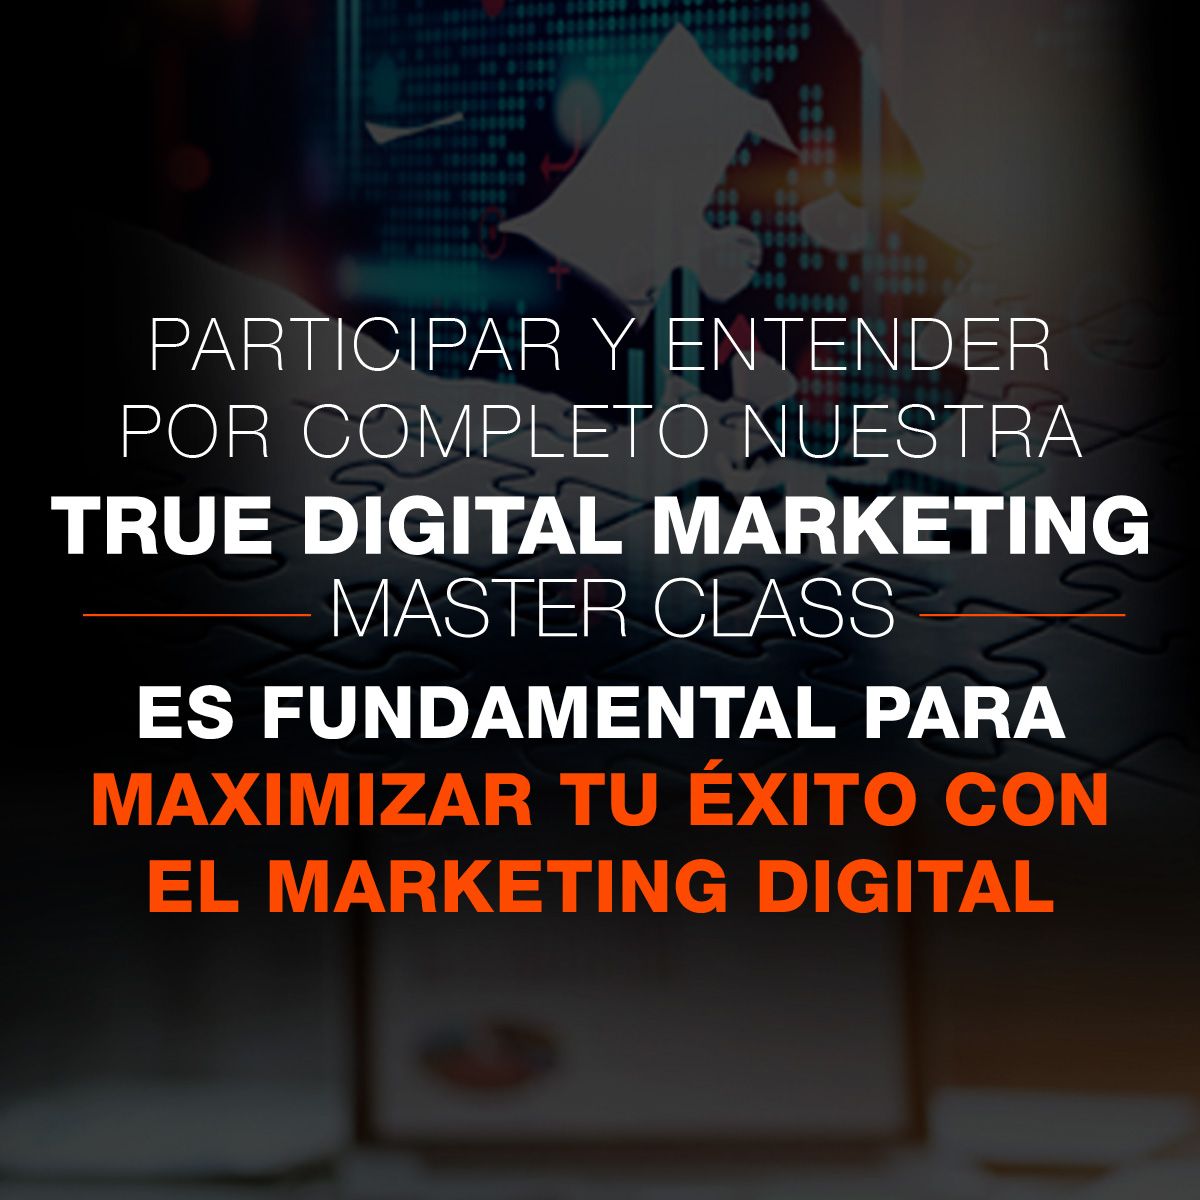 Participar y entender por completo nuestra True Digital Marketing Master Class es fundamental para maximizar tu éxito con el marketing digital.